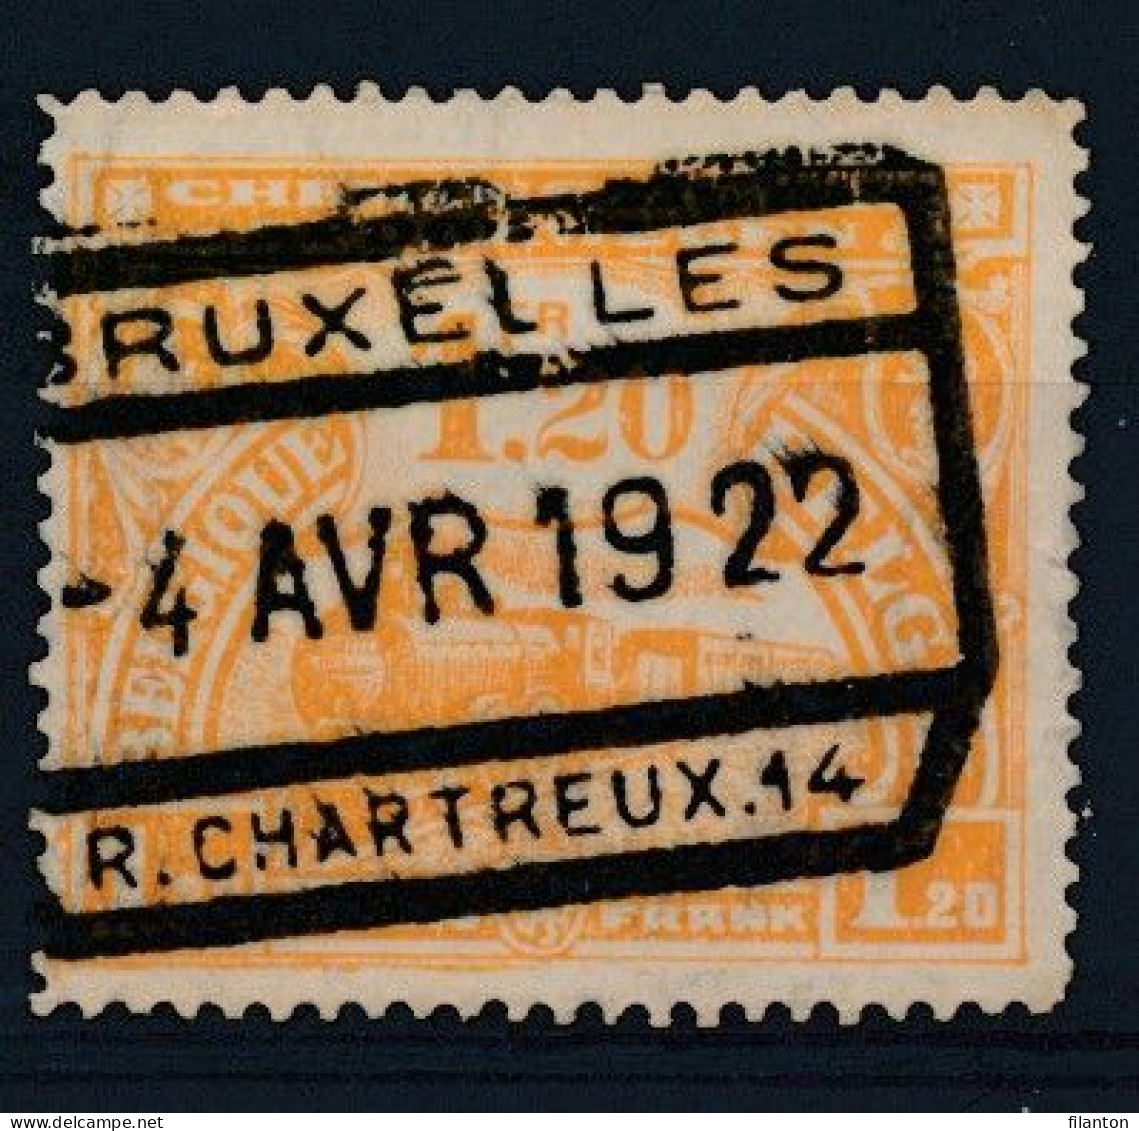 TR  117 -  "BRUXELLES - R.CHARTRTEUX 14" - (ref. 37.493) - Oblitérés